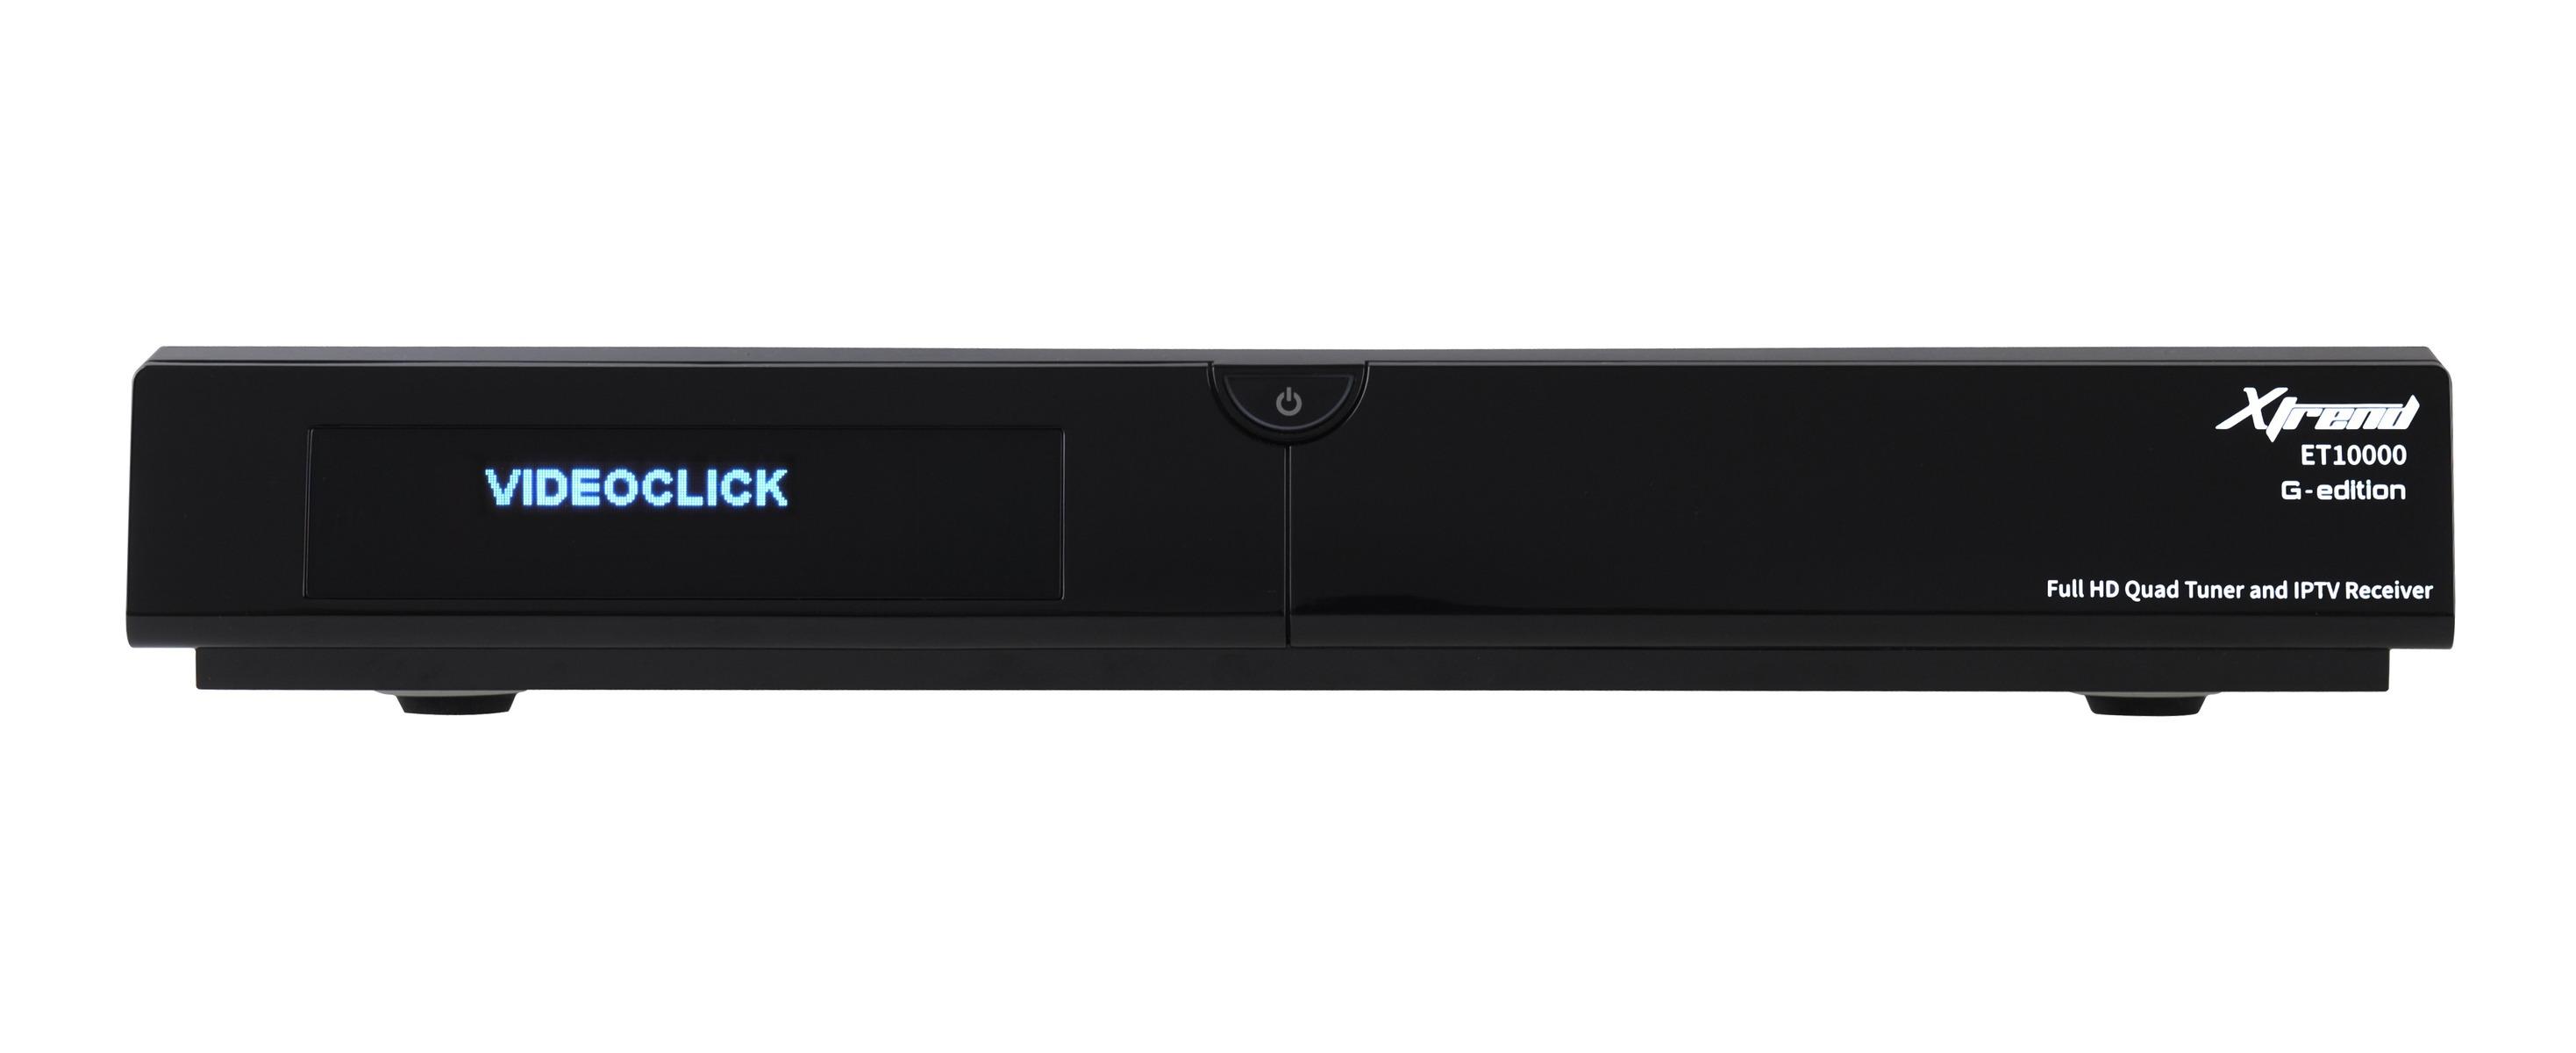 schwarz 2 x DVB-C Tuner, Linux, Full HD, HbbTV, PVR Ready Xtrend ET 10000 Receiver HD 